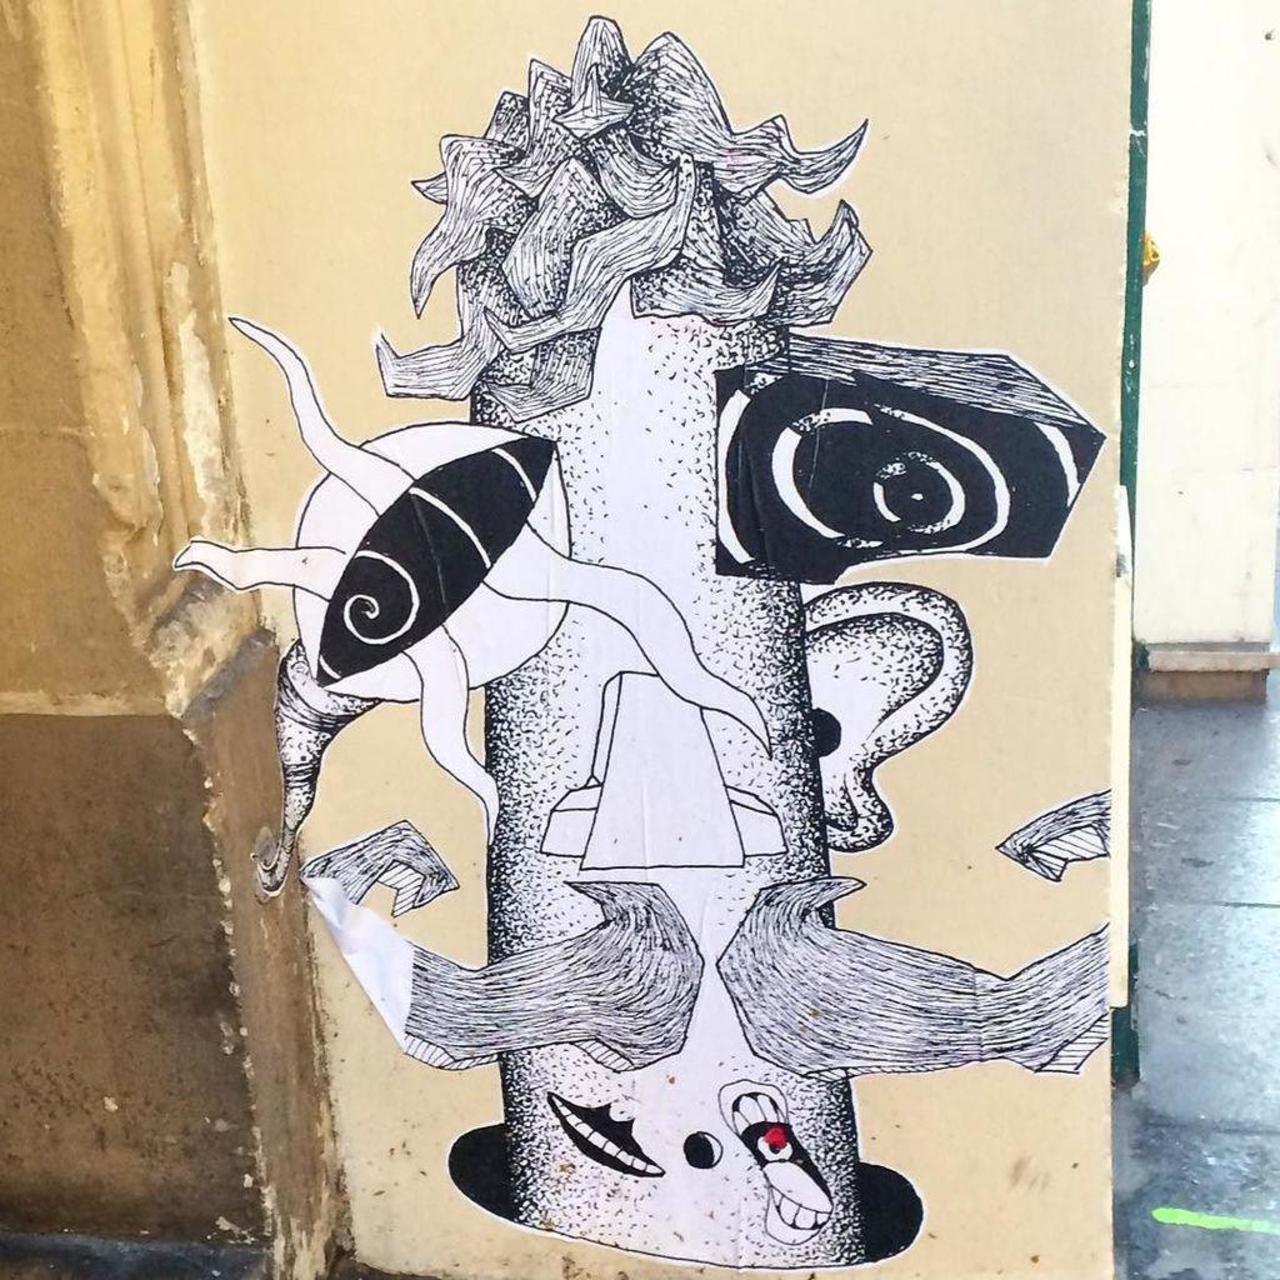 #streetart #streetartparis #parisstreetart #graffiti #collage #urbanart by benapix http://t.co/d9xmTqcUxq